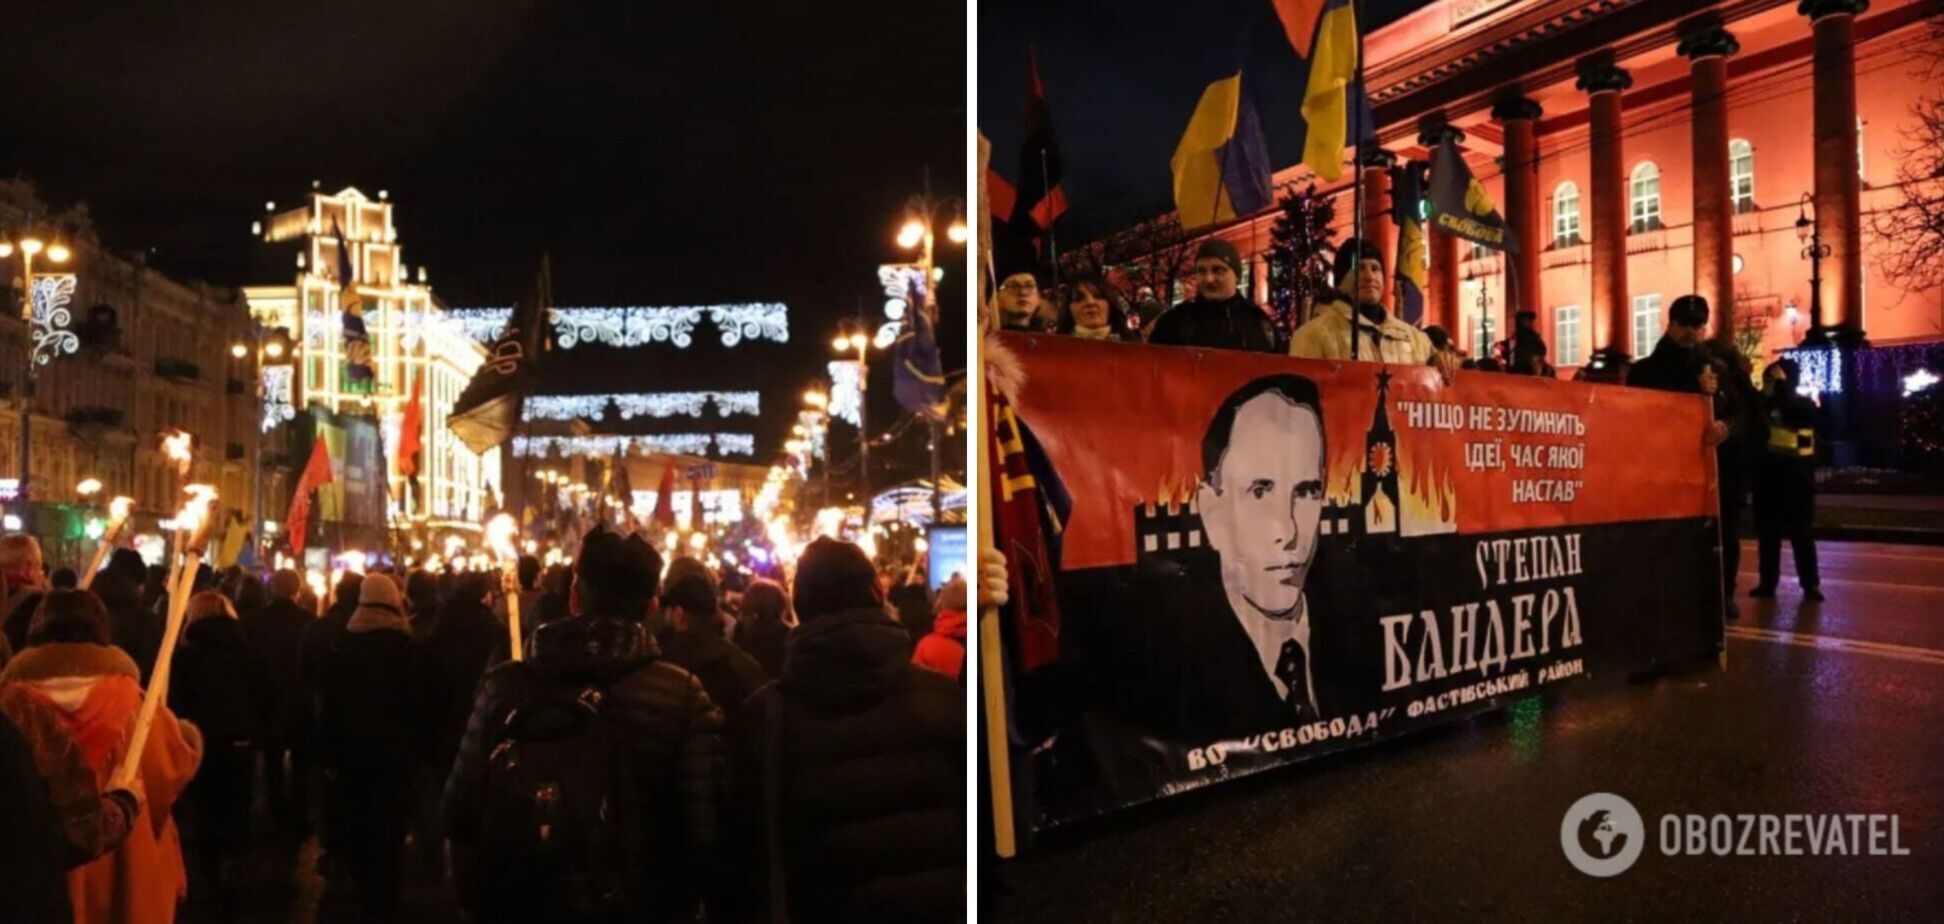 Білорусь з 'нестерпним болем' висловила протест через марш Бандери і висунула Україні вимоги